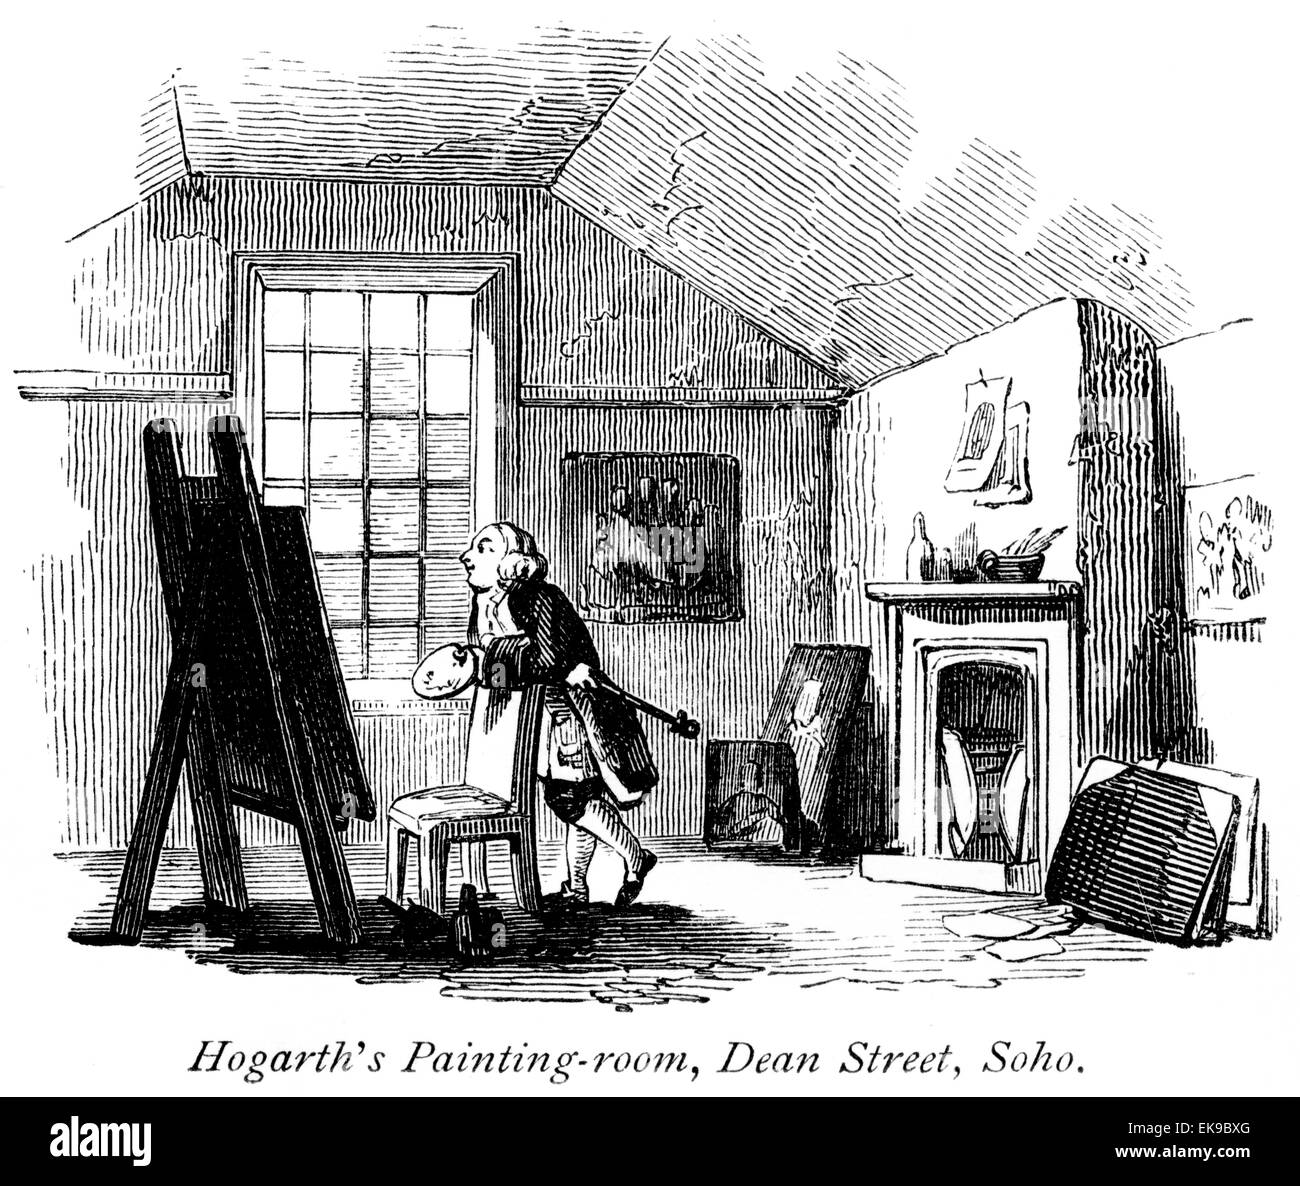 Une gravure de Hogarth's salle de peinture, Dean Street, Soho numérisées à haute résolution à partir d'un livre imprimé en 1867. Banque D'Images